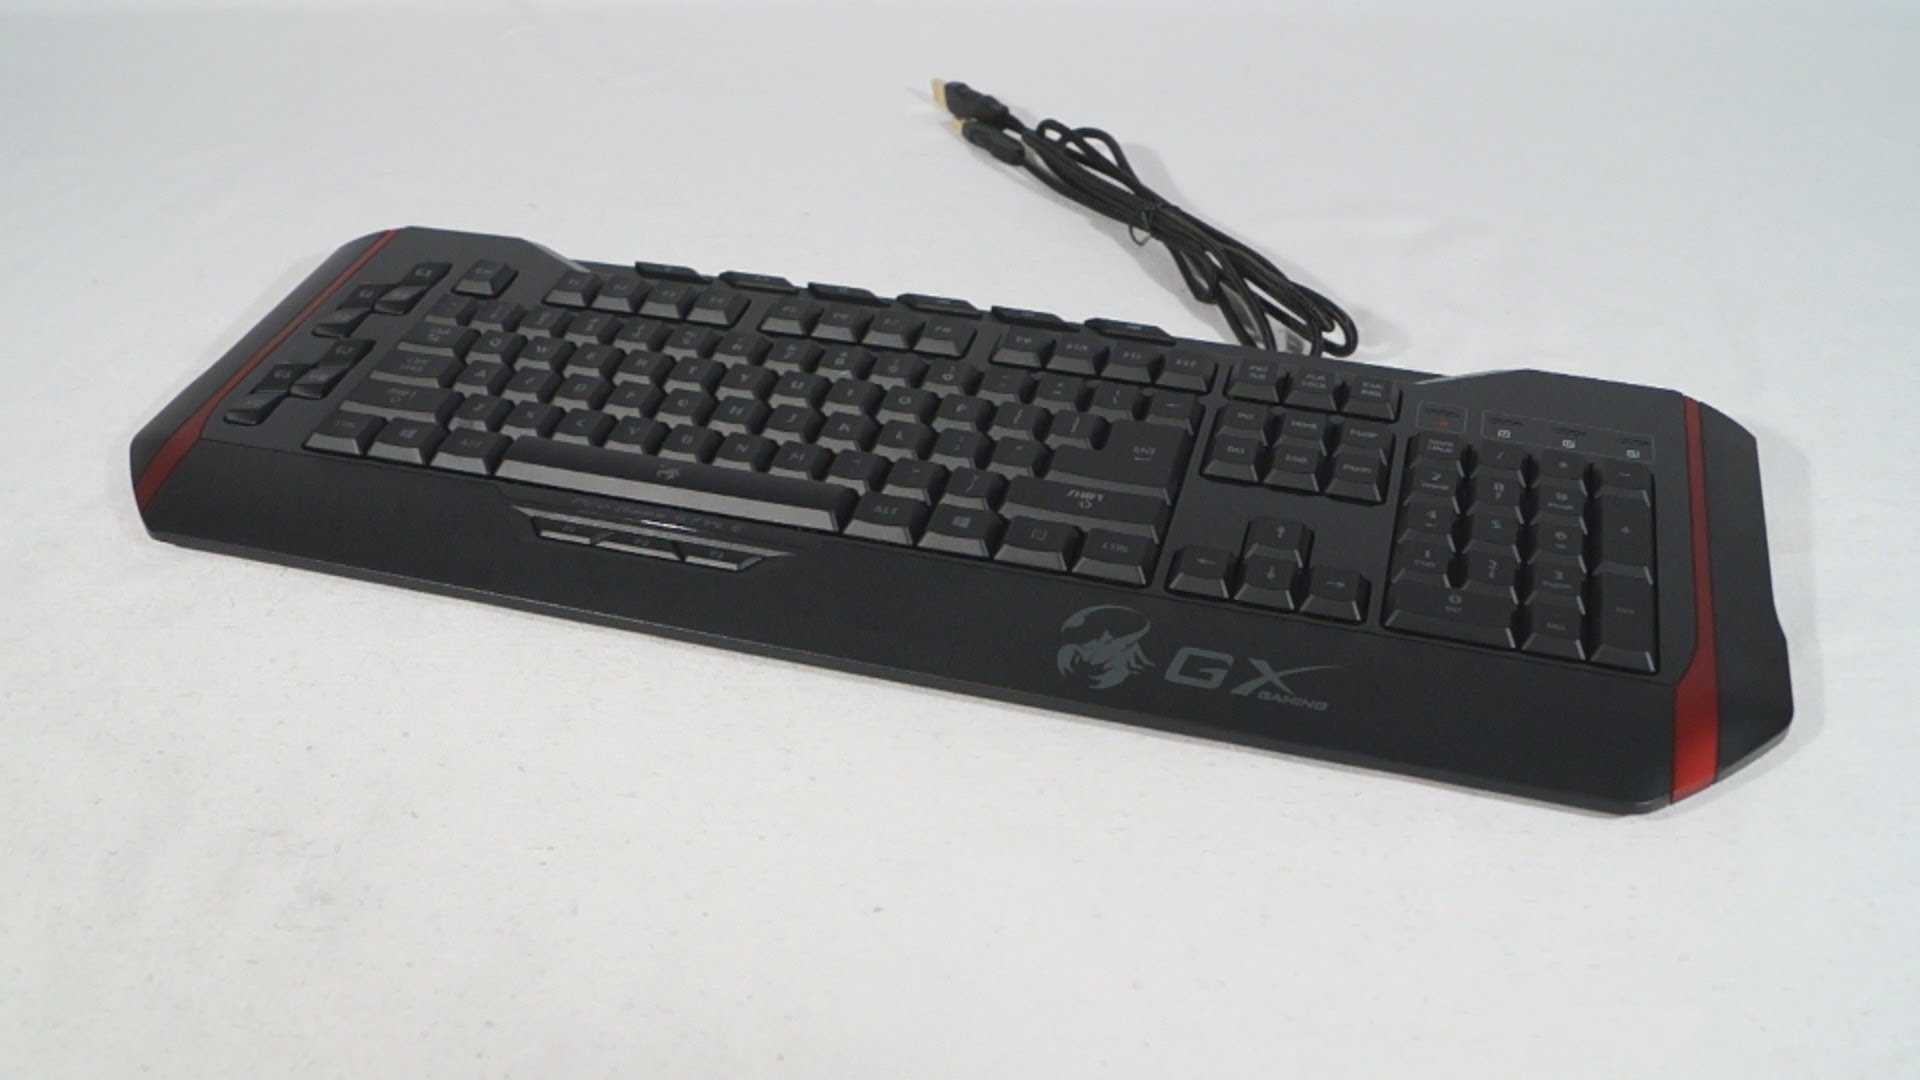 Клавиатура genius gx gaming manticore черный (31310058102) купить от 1279 руб в волгограде, сравнить цены, отзывы, видео обзоры и характеристики